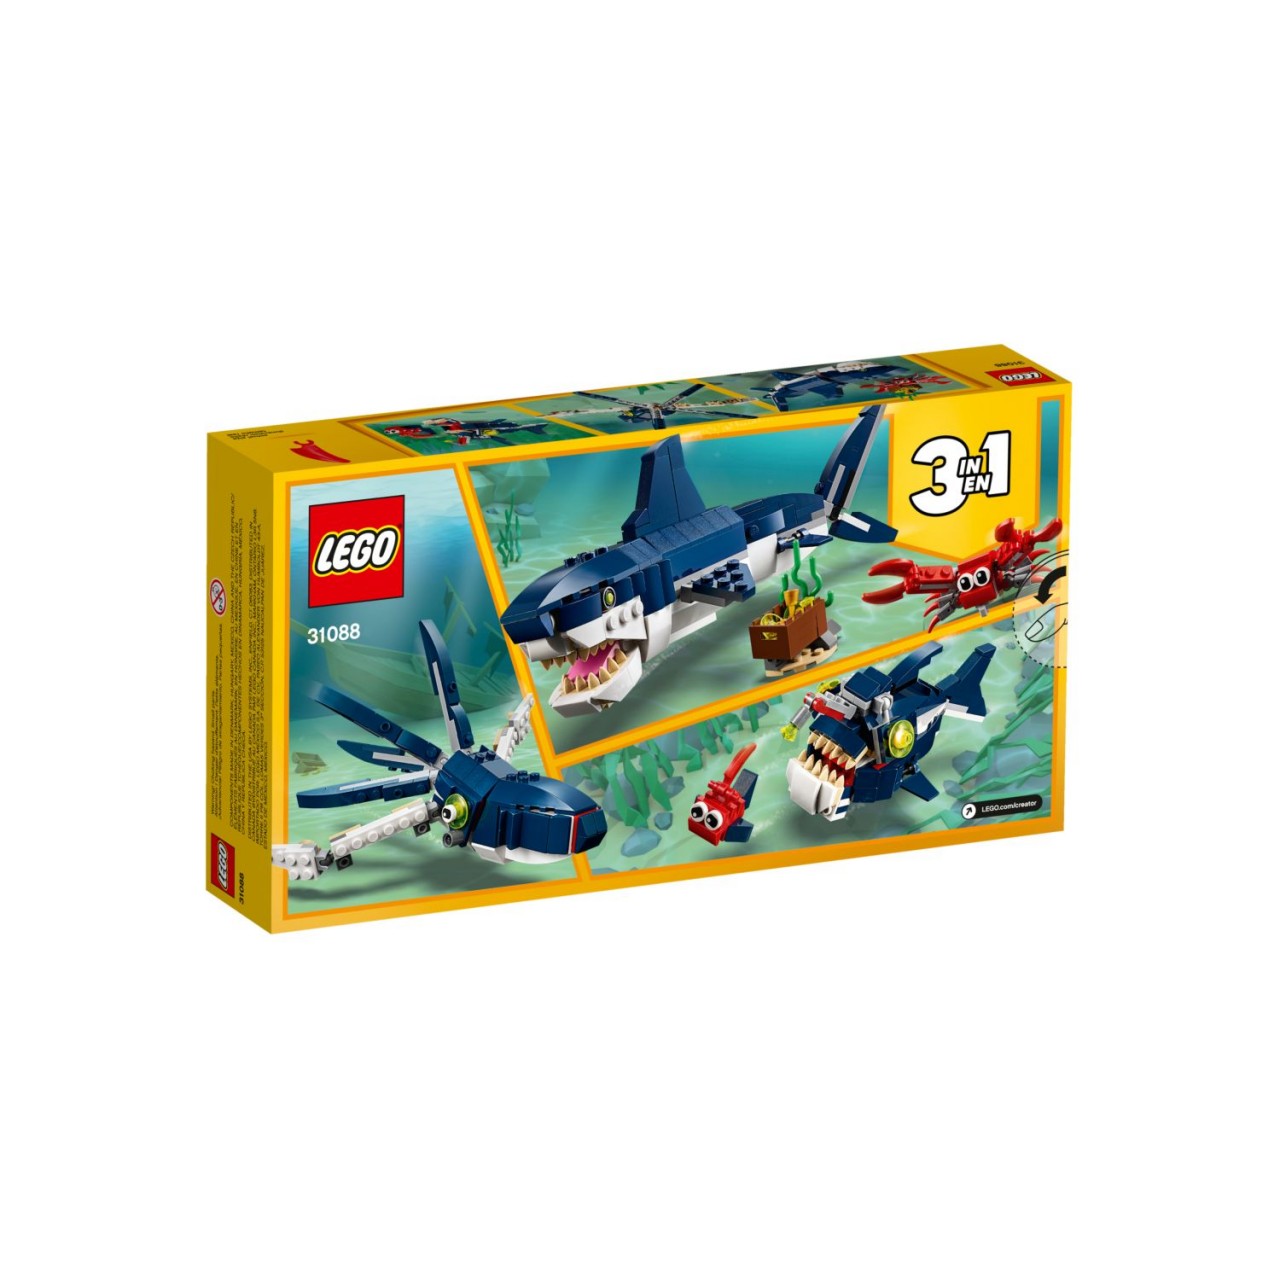 LEGO CREATOR 31088 Bewohner der Tiefsee